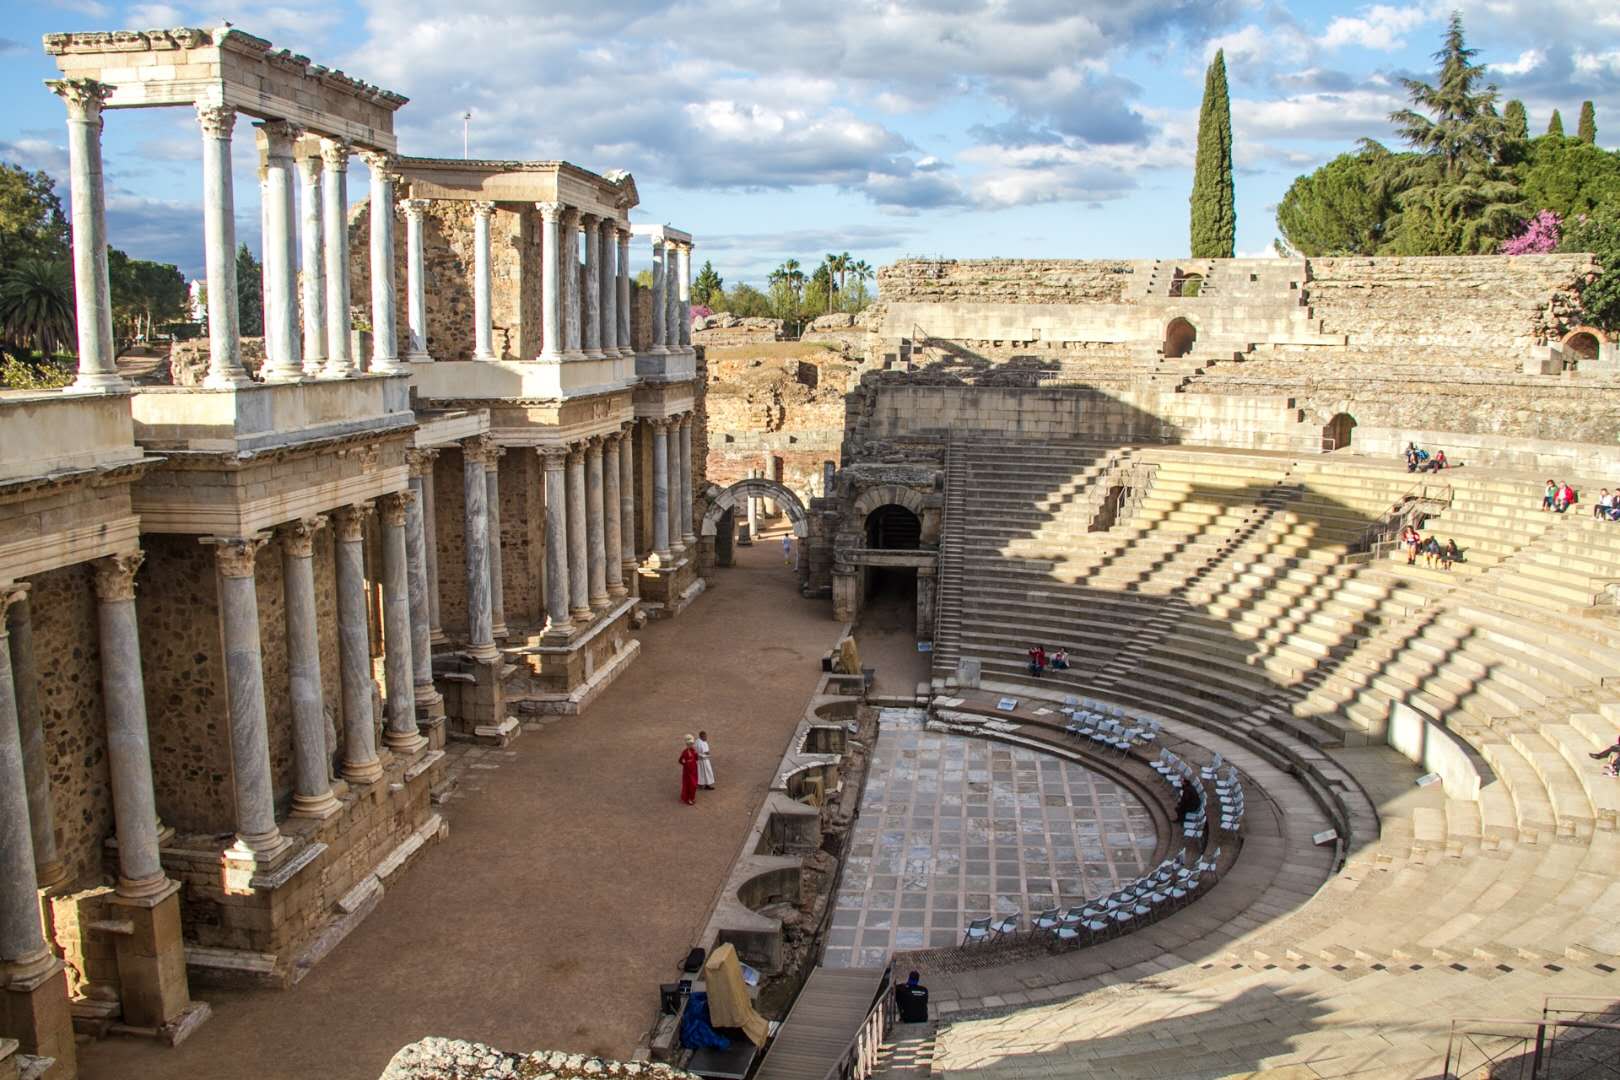 梅里达剧院塔拉戈纳凯旋门伊斯兰文明流入时期,古朴敦厚的罗马建筑